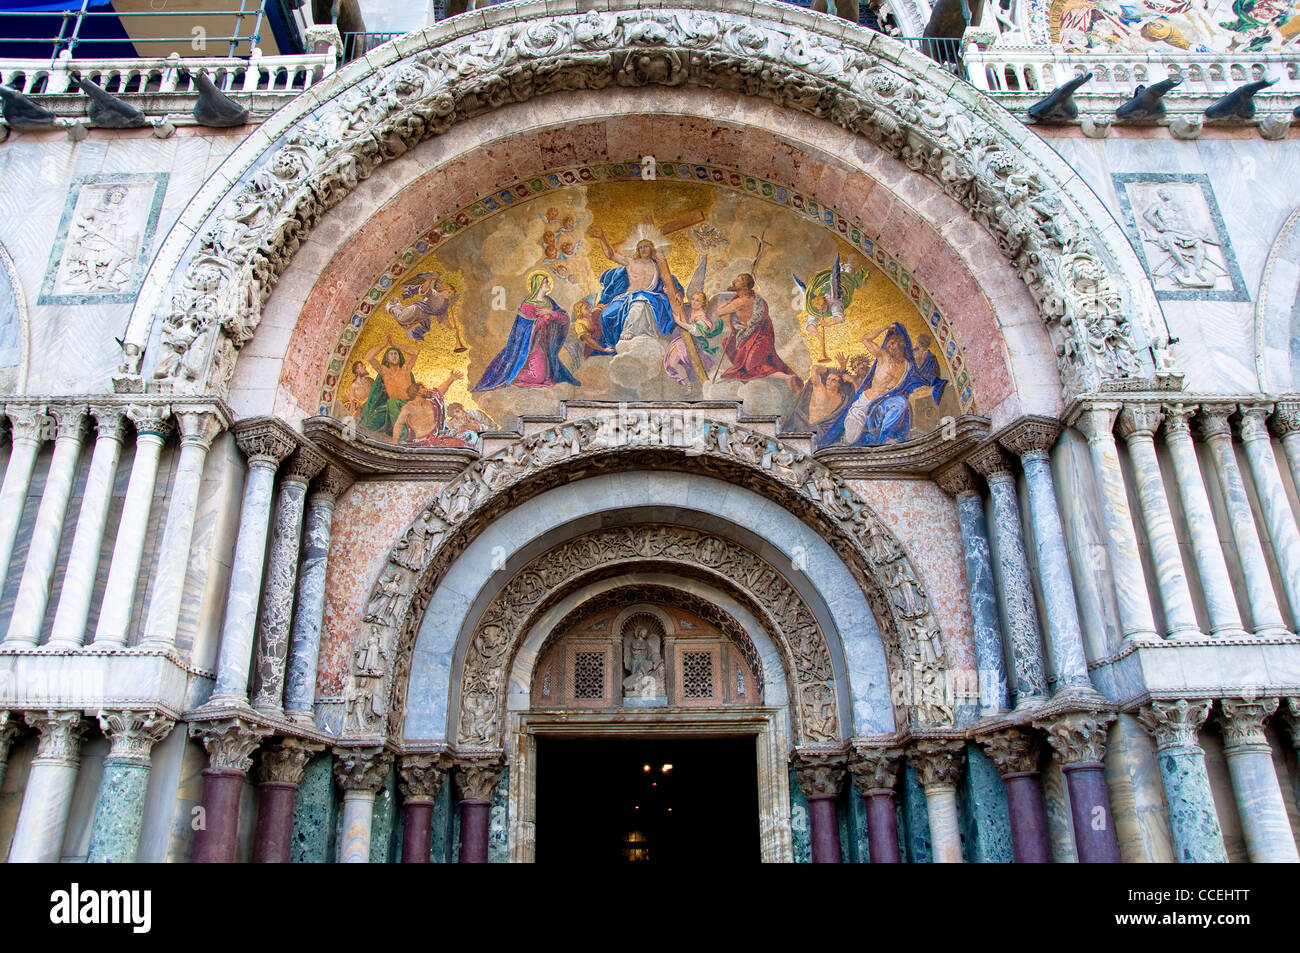 Saint Mark's Basilica, St Mark's Square, Venice, Italy Stock Photo